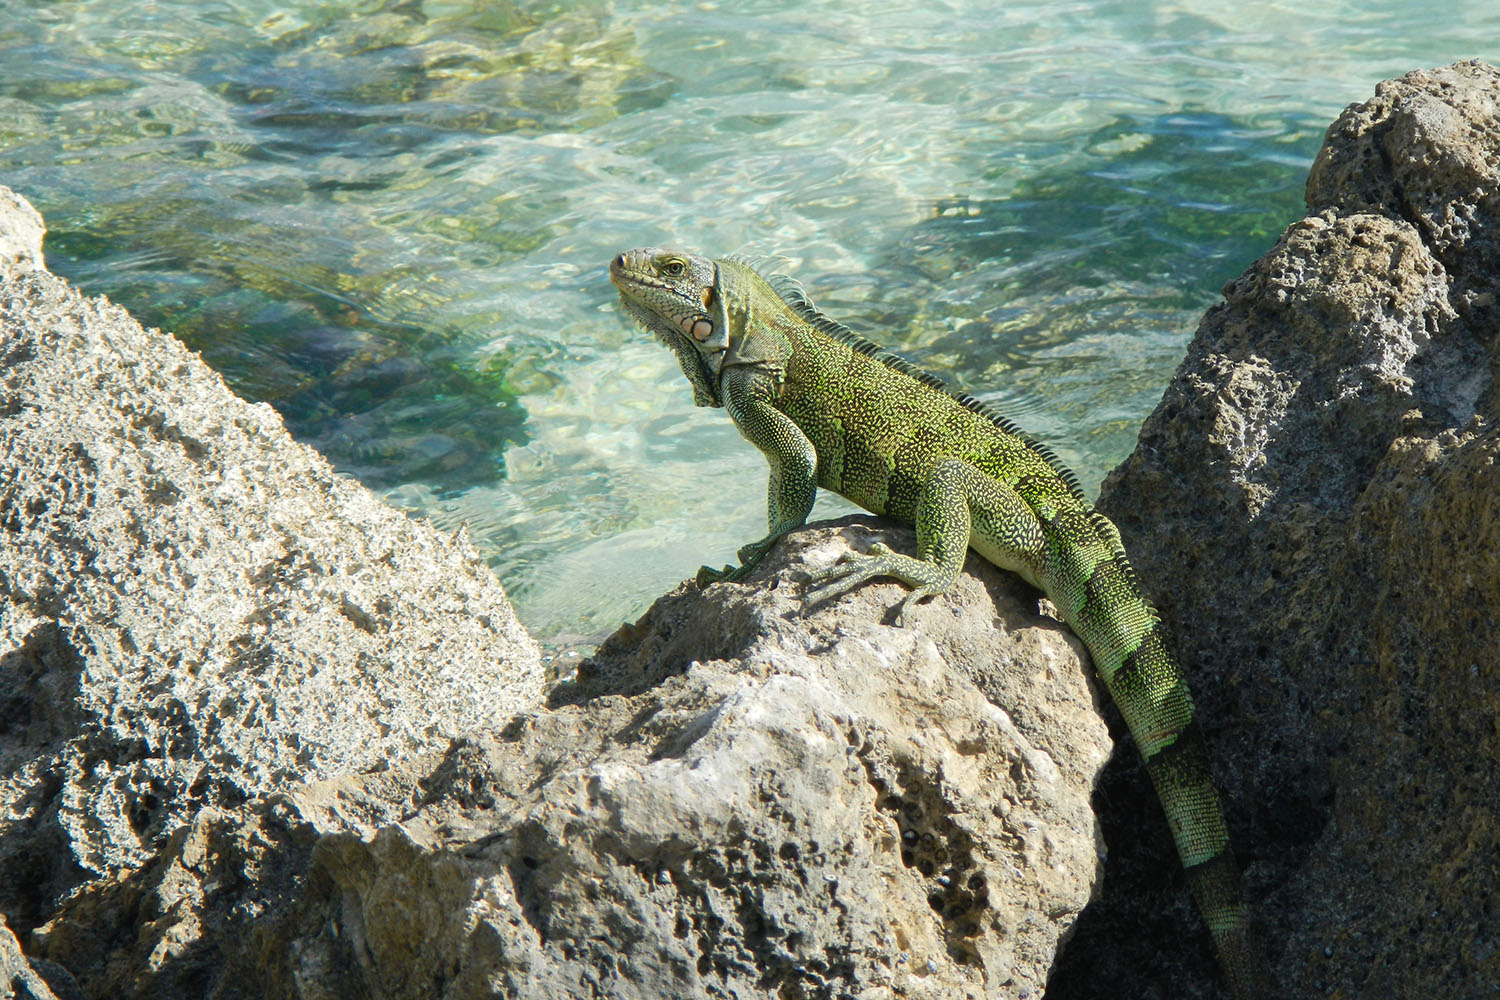 Cétacés et faune marine de Guadeloupe, voyage scientifique. Iguane © Dorothée Paulus